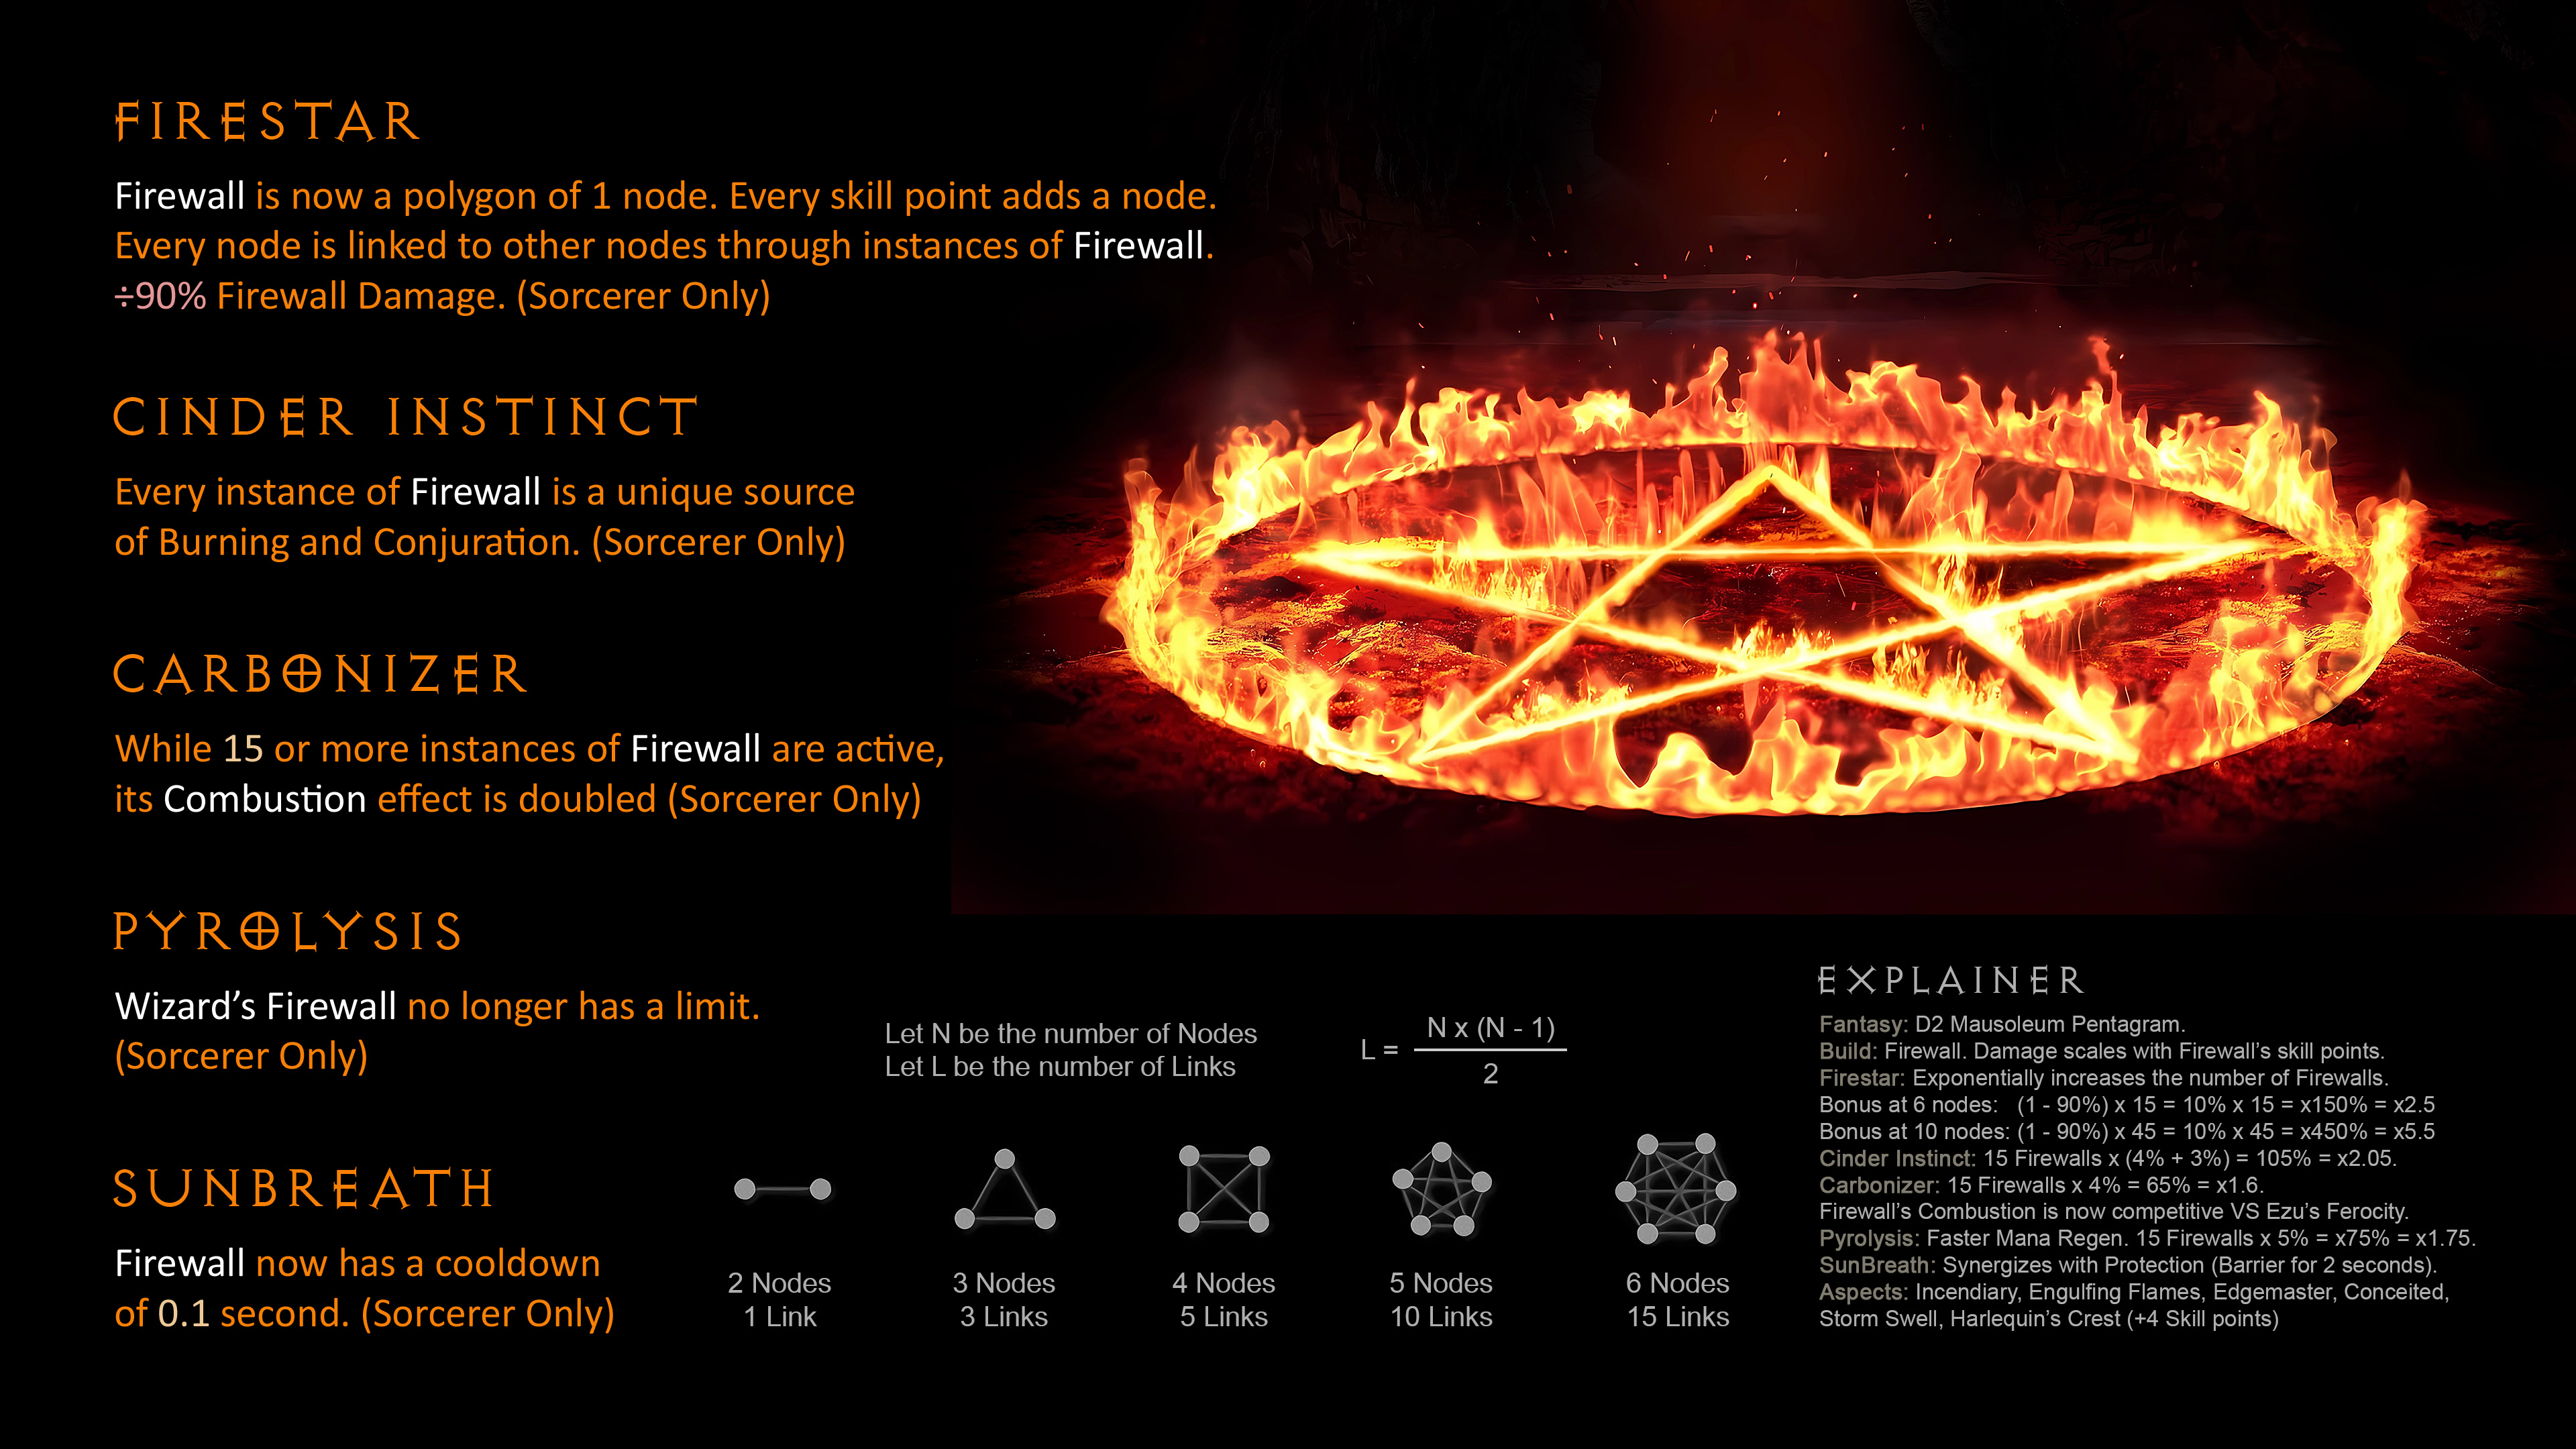 D4 Proposal 22 - Firestar - Firewall